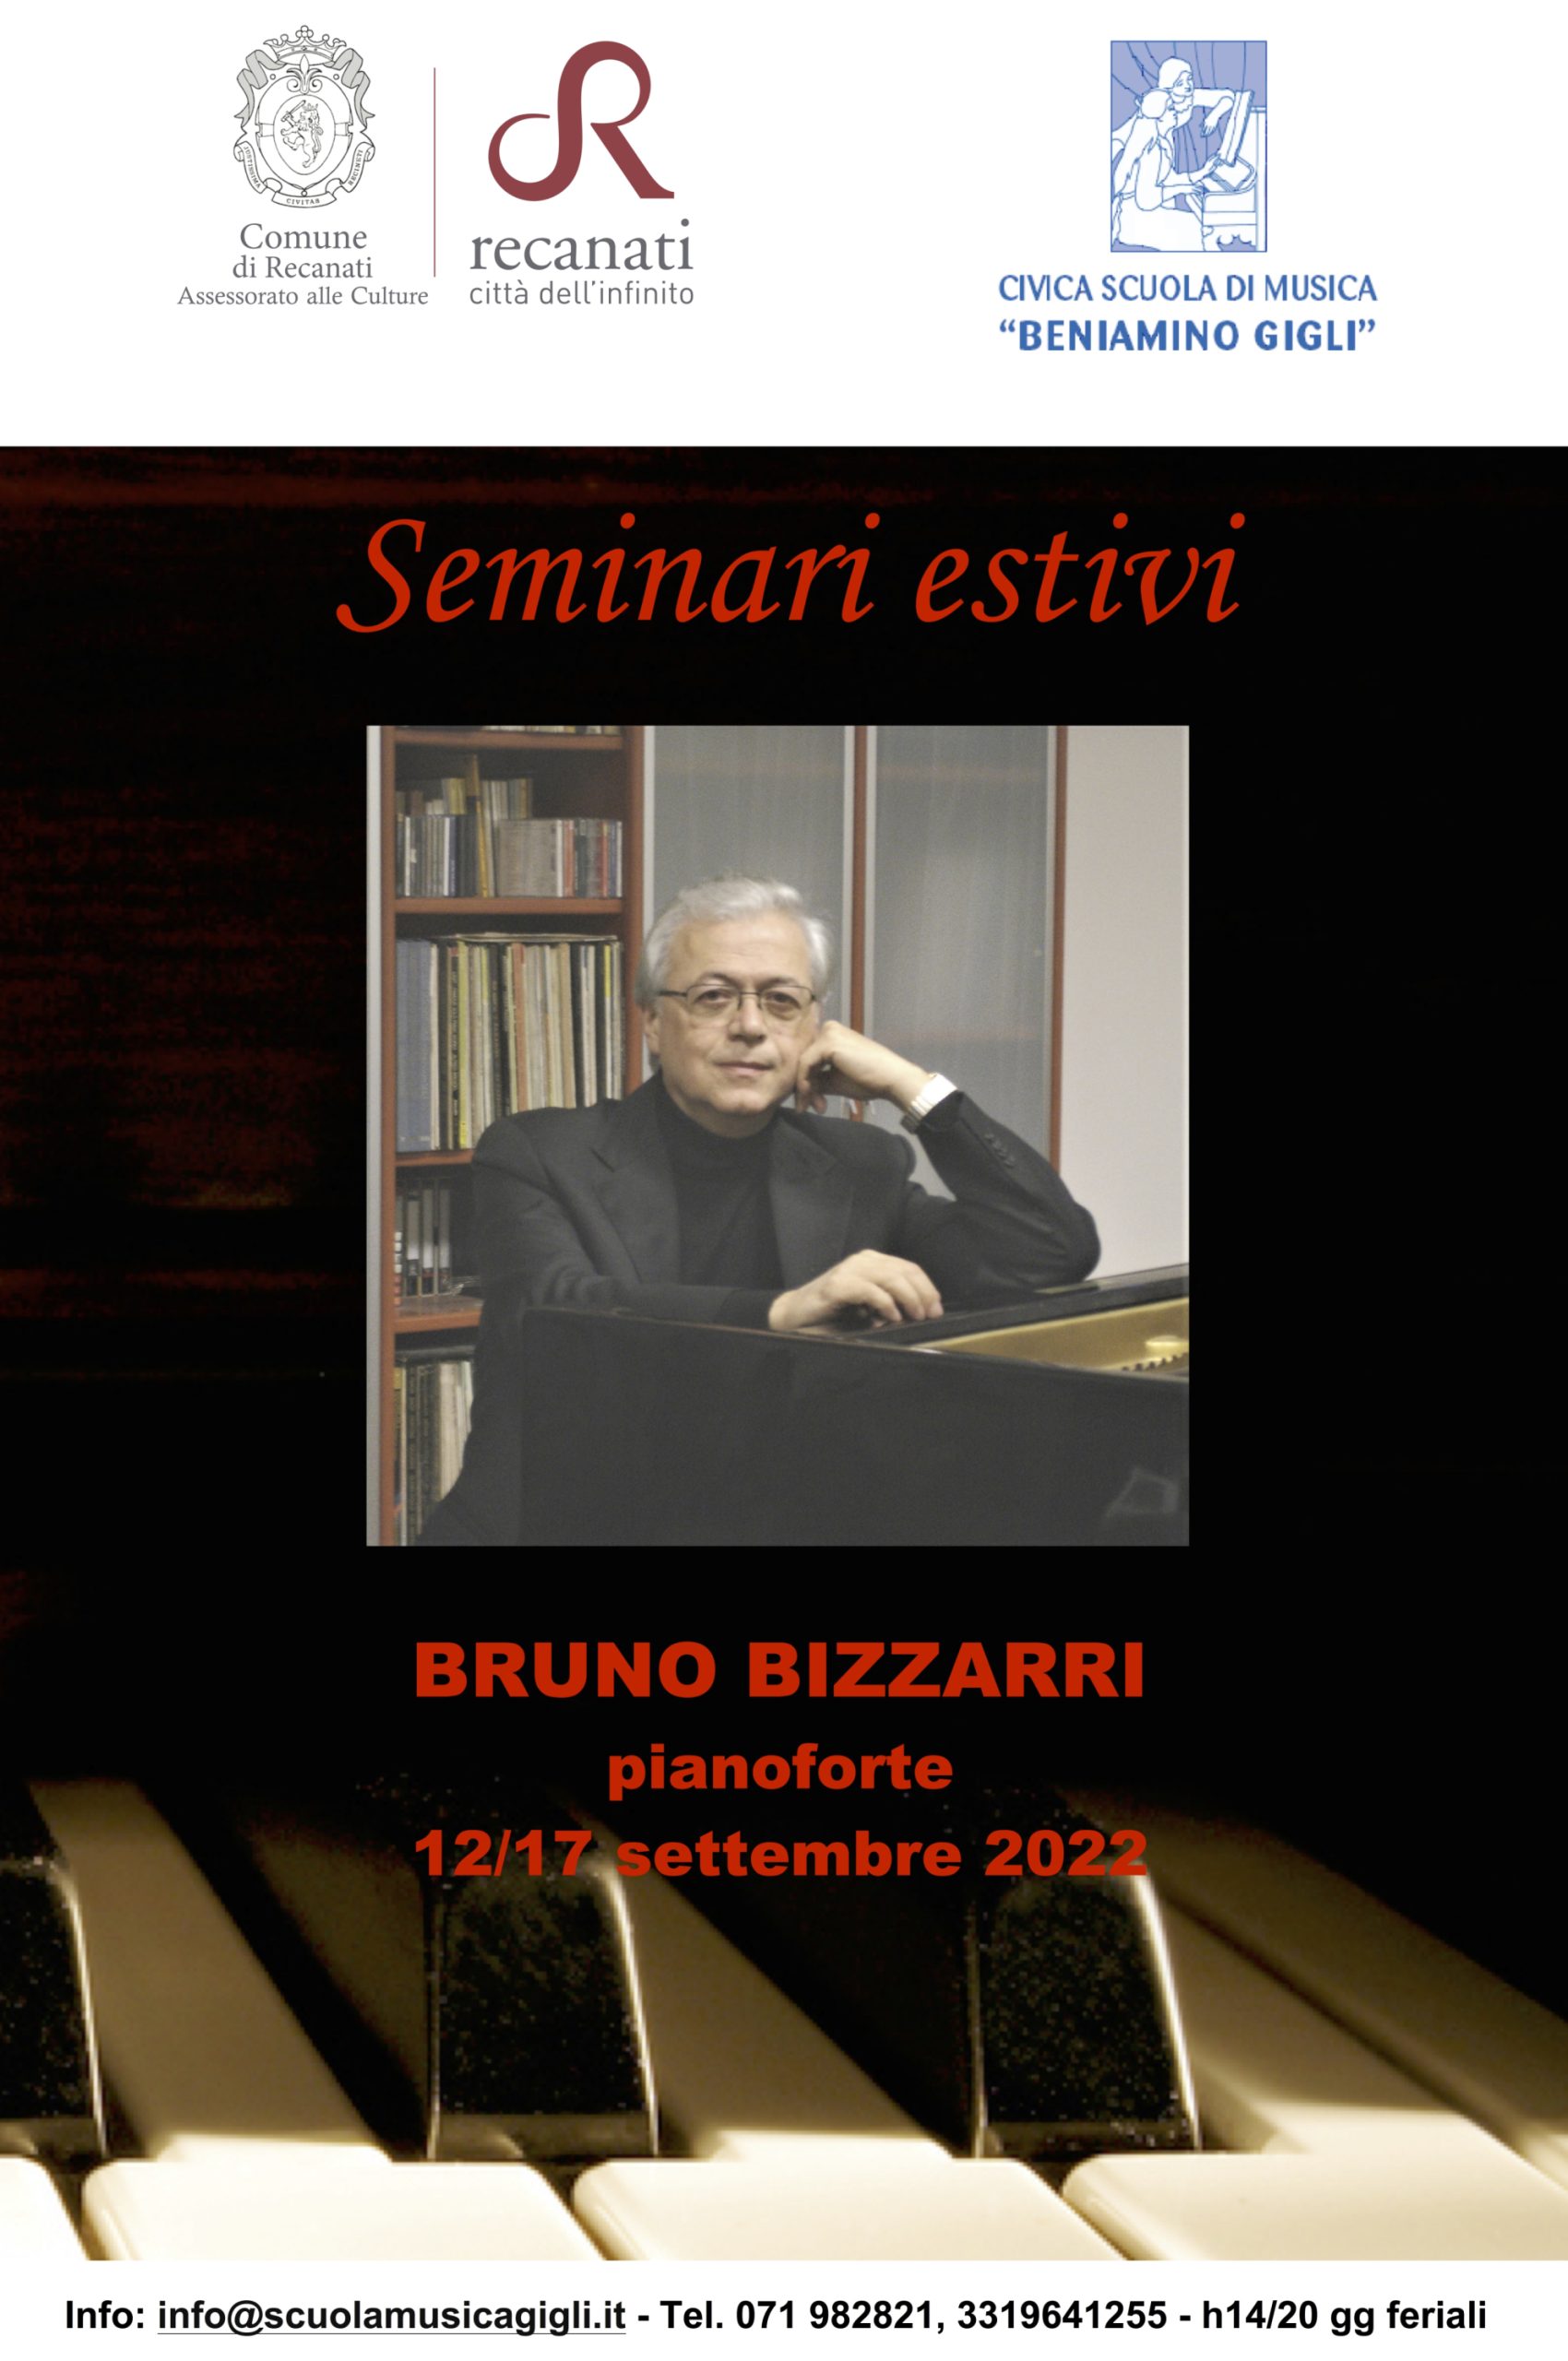 Seminari estivi Bizzarri 2022